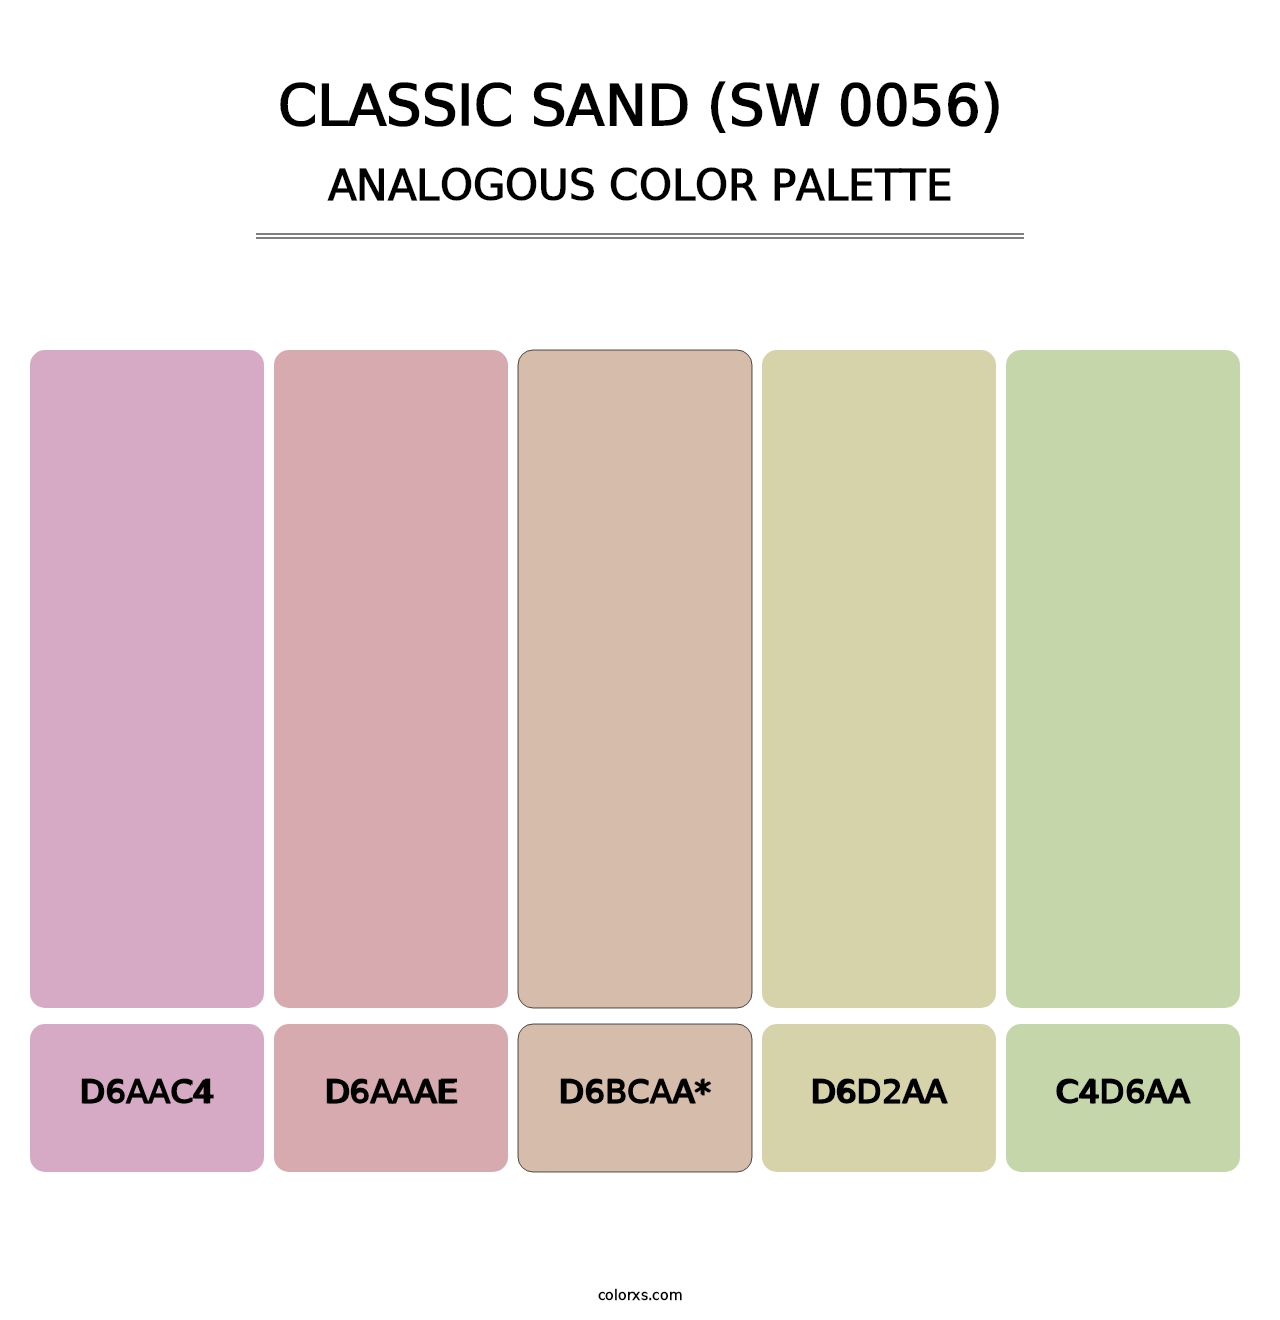 Classic Sand (SW 0056) - Analogous Color Palette